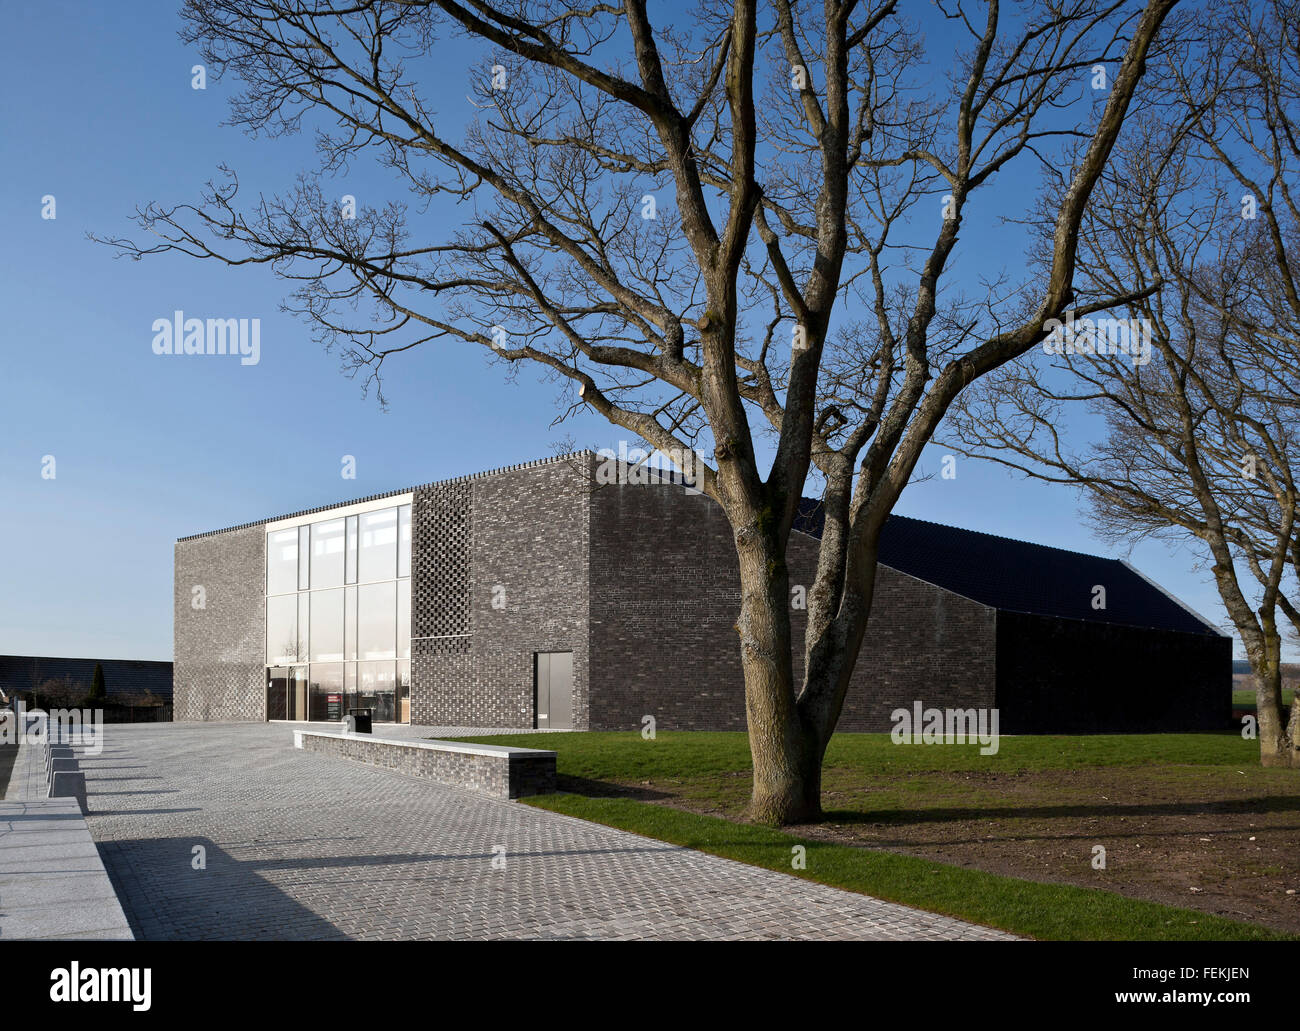 Schlacht von Bannockburn Besucherzentrum, Stirling. Einem quadratischen grauen Gebäude, mit einer großen Glasscheibe. Stockfoto